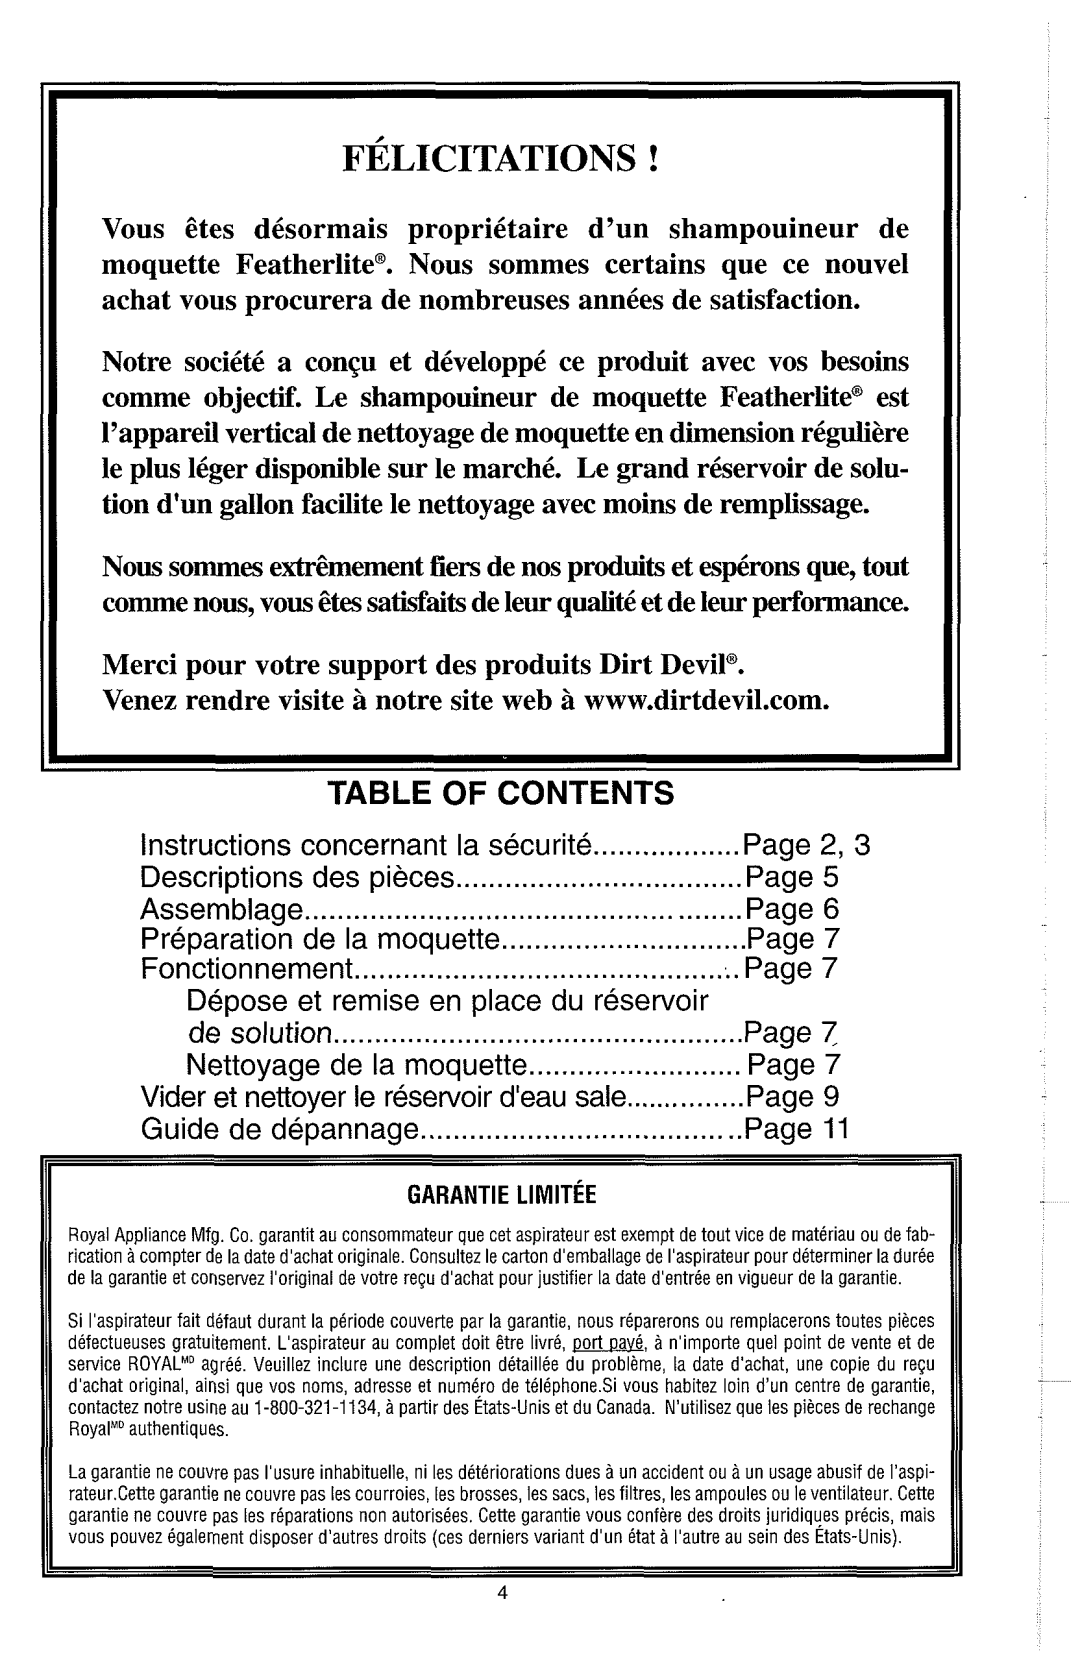 Dirt Devil Carpet Shampooer Table Of Contents, Guide de depannage, Instructions concernant la securite, Fonctionnement 